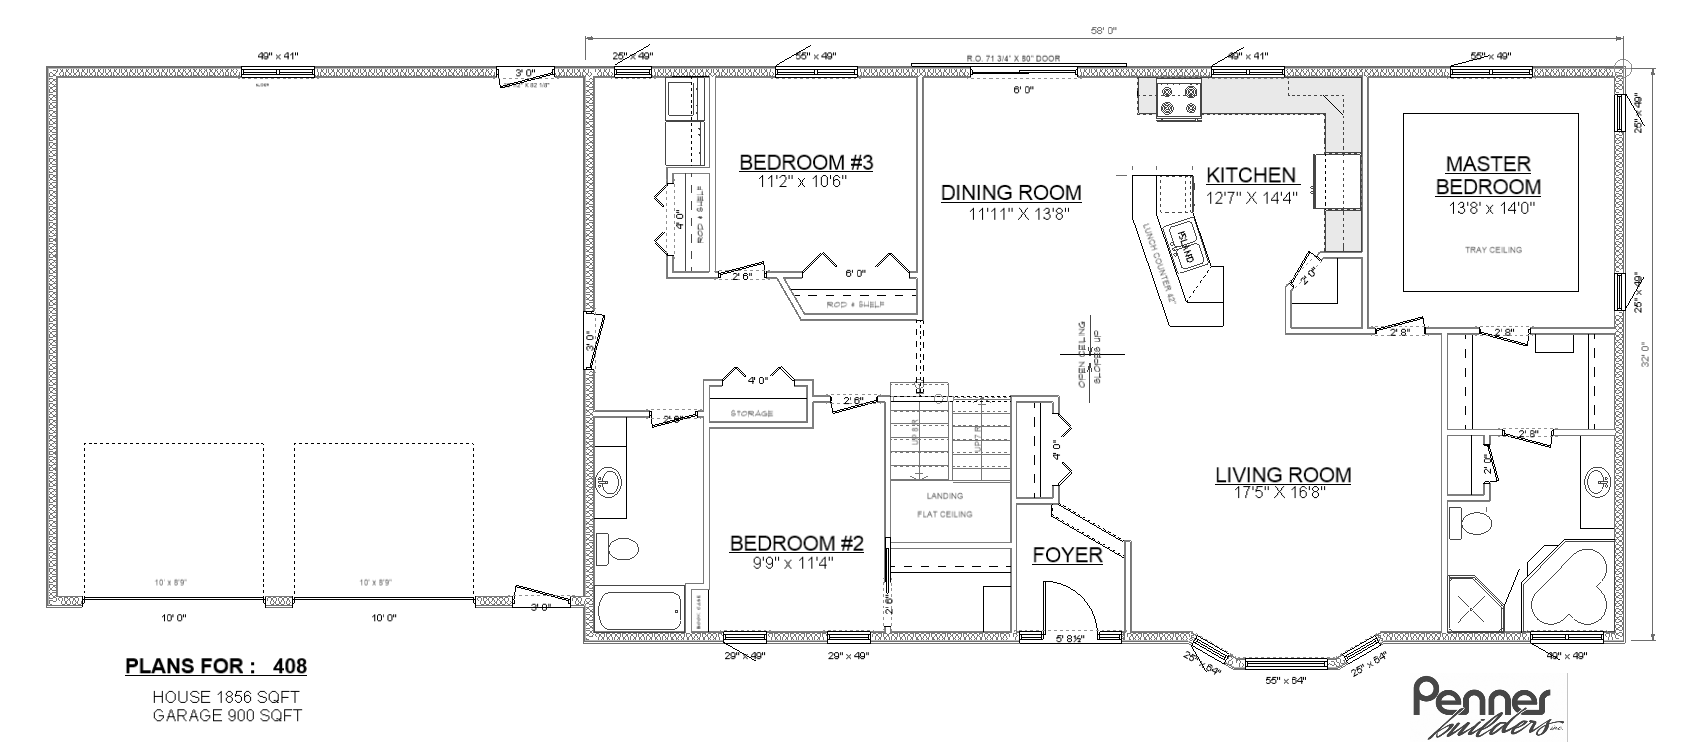 Penner Homes Floor Plan Id: 408